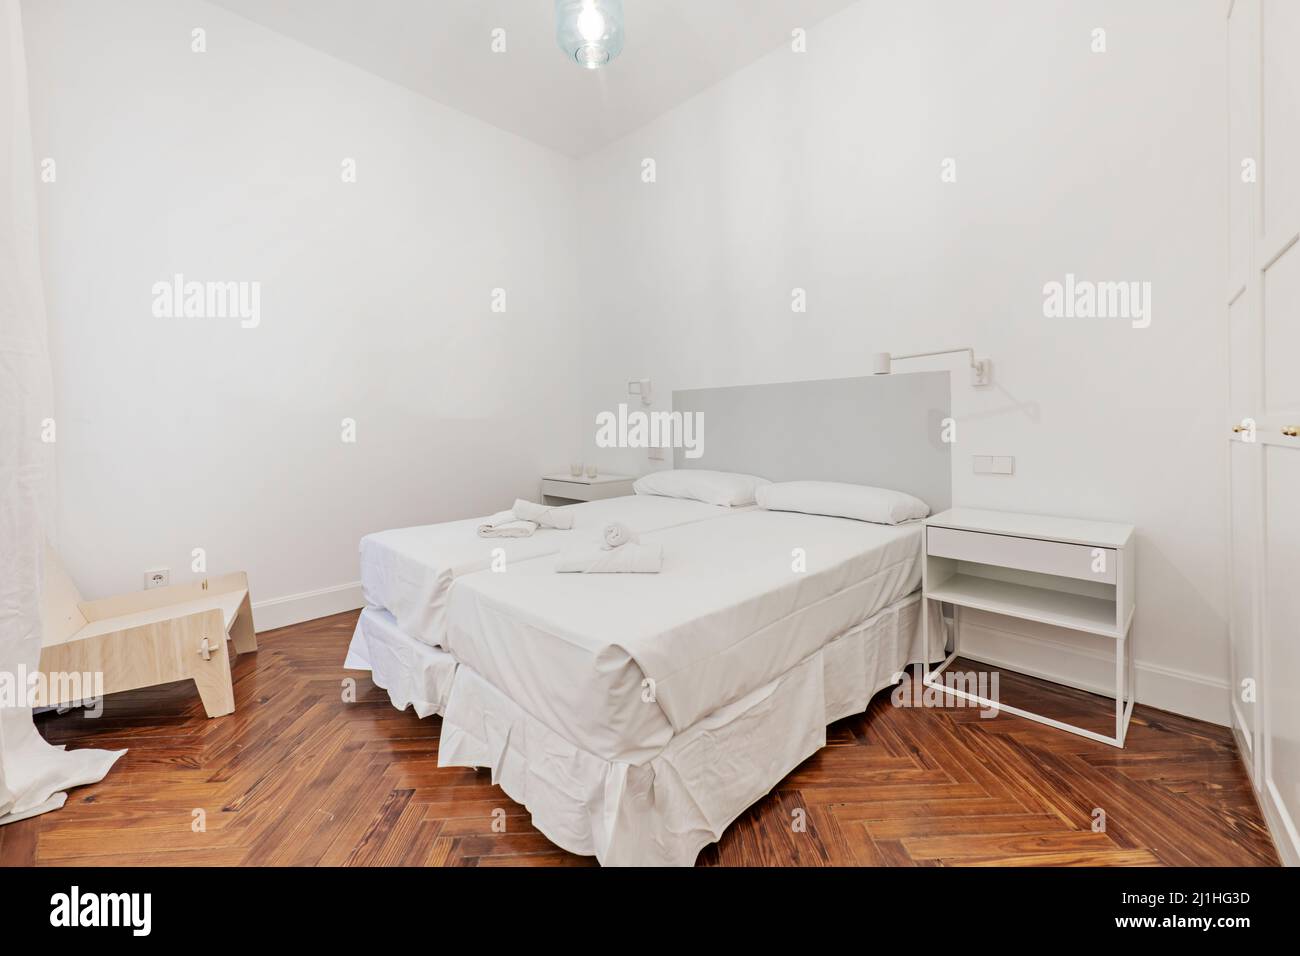 Chambre avec lits doubles et draps blancs, serviettes de bain sur les lits, tables de chevet blanches et parquet en pin Banque D'Images